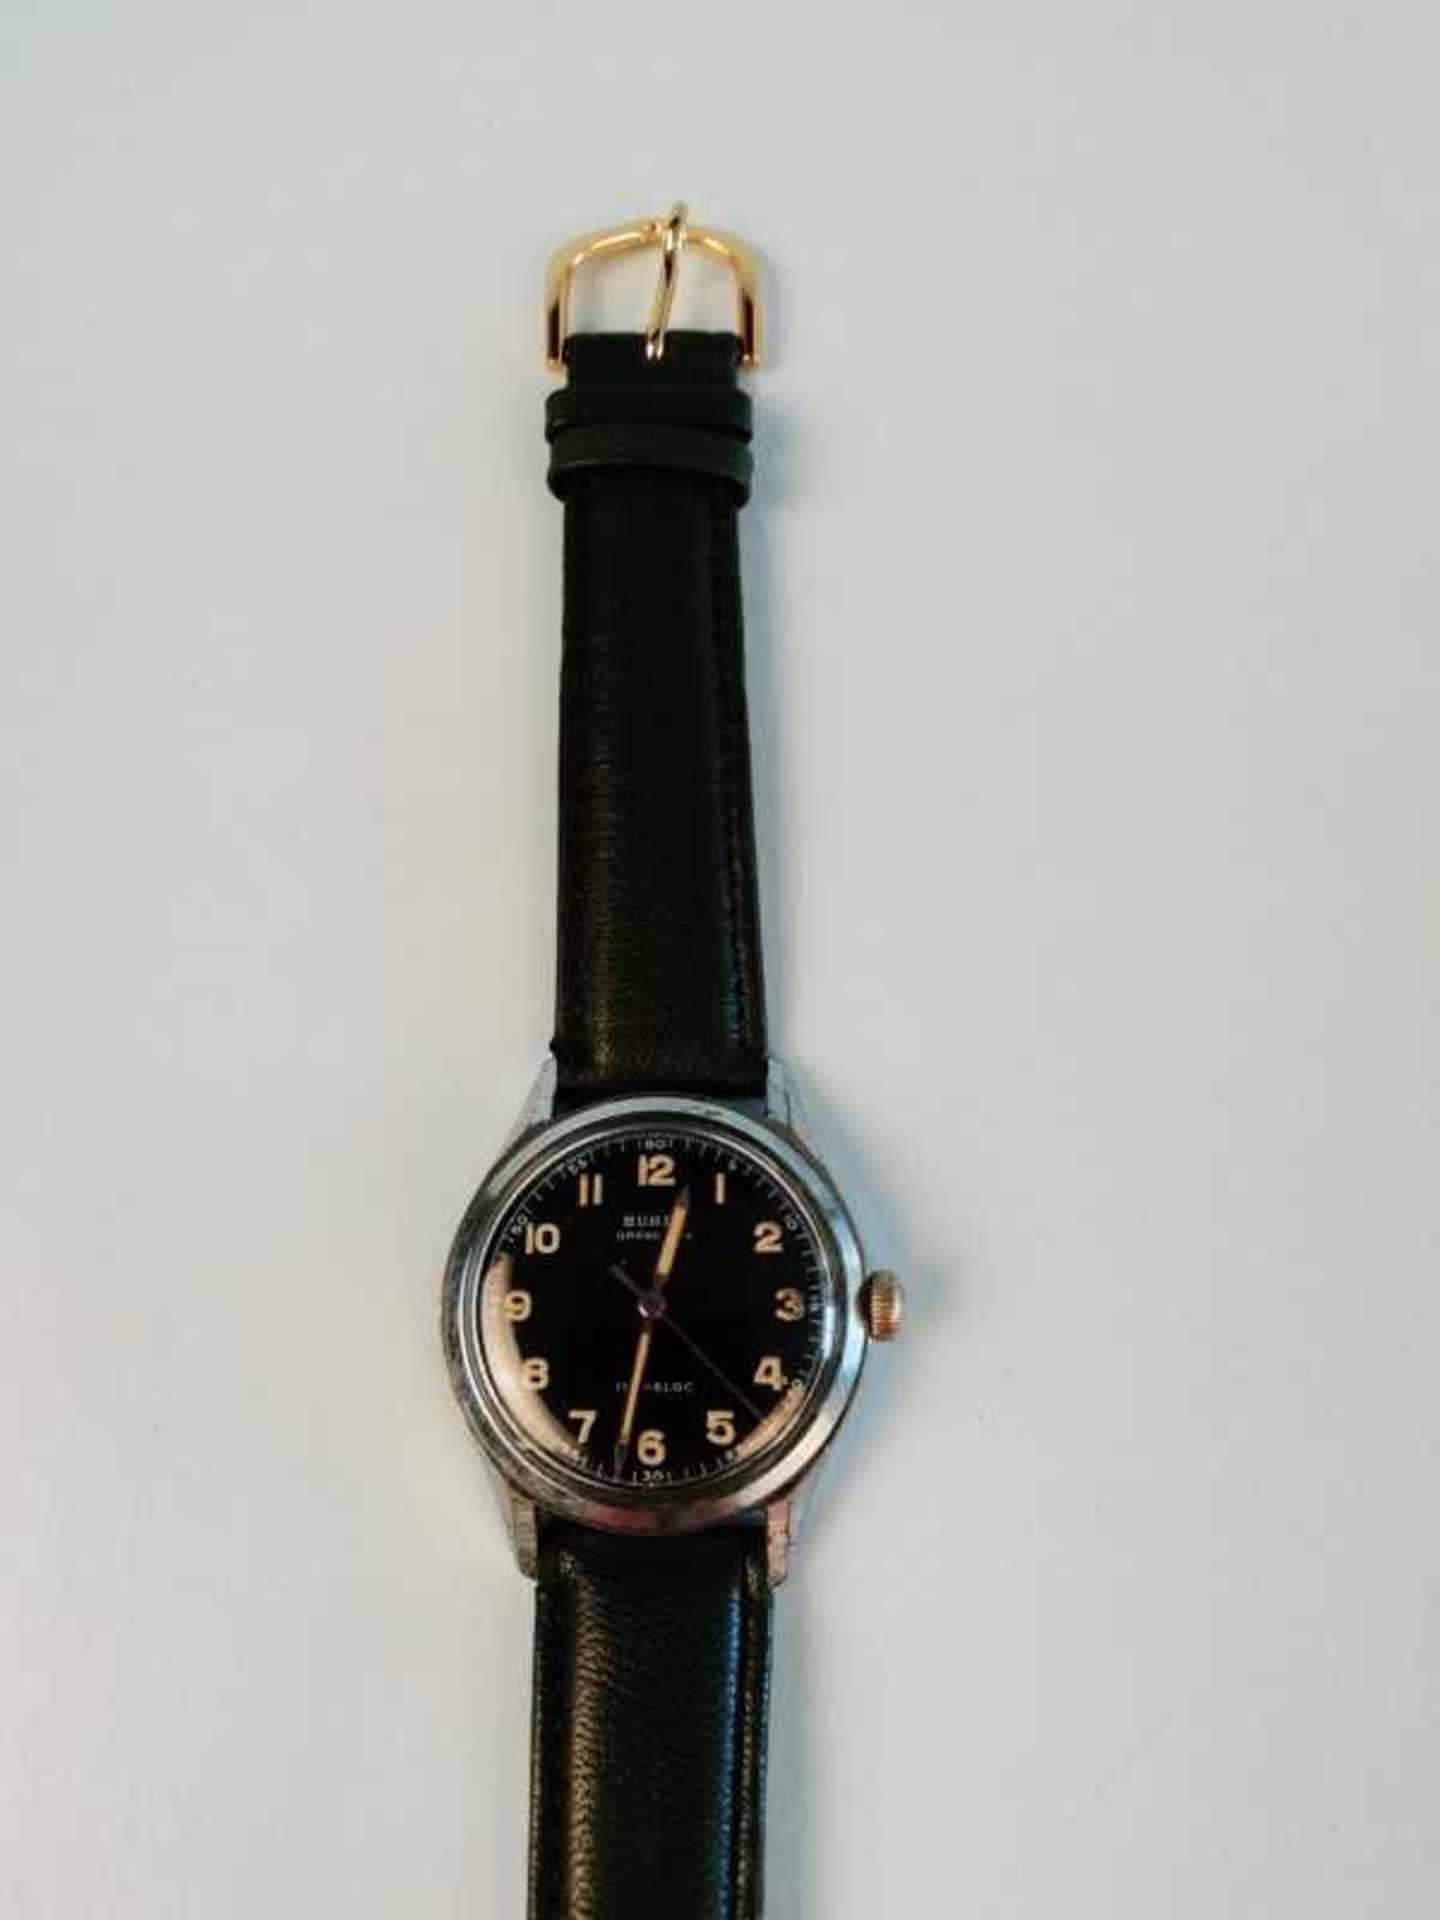 Armbanduhr "Buren"Metall, vintage, Ankerwerk, 30,7g, Werkservice wird empfohlen, keine Garantie